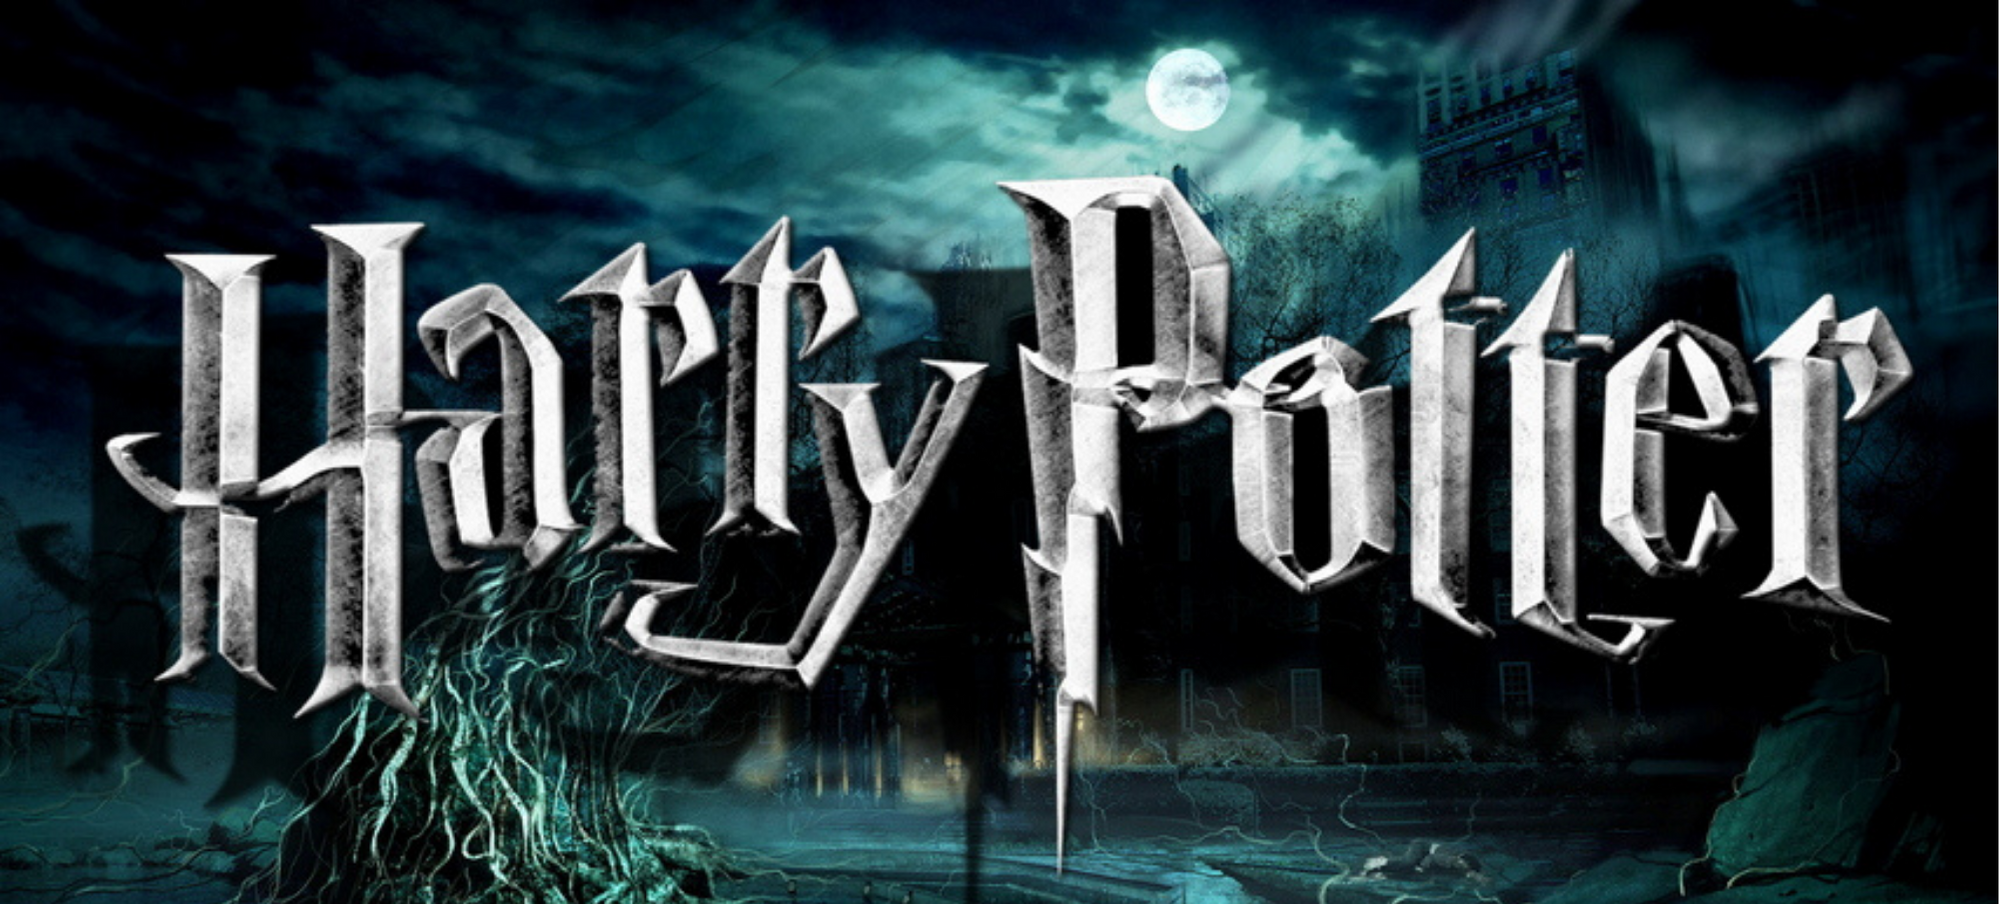 Harry potter Logo - Image 2.png